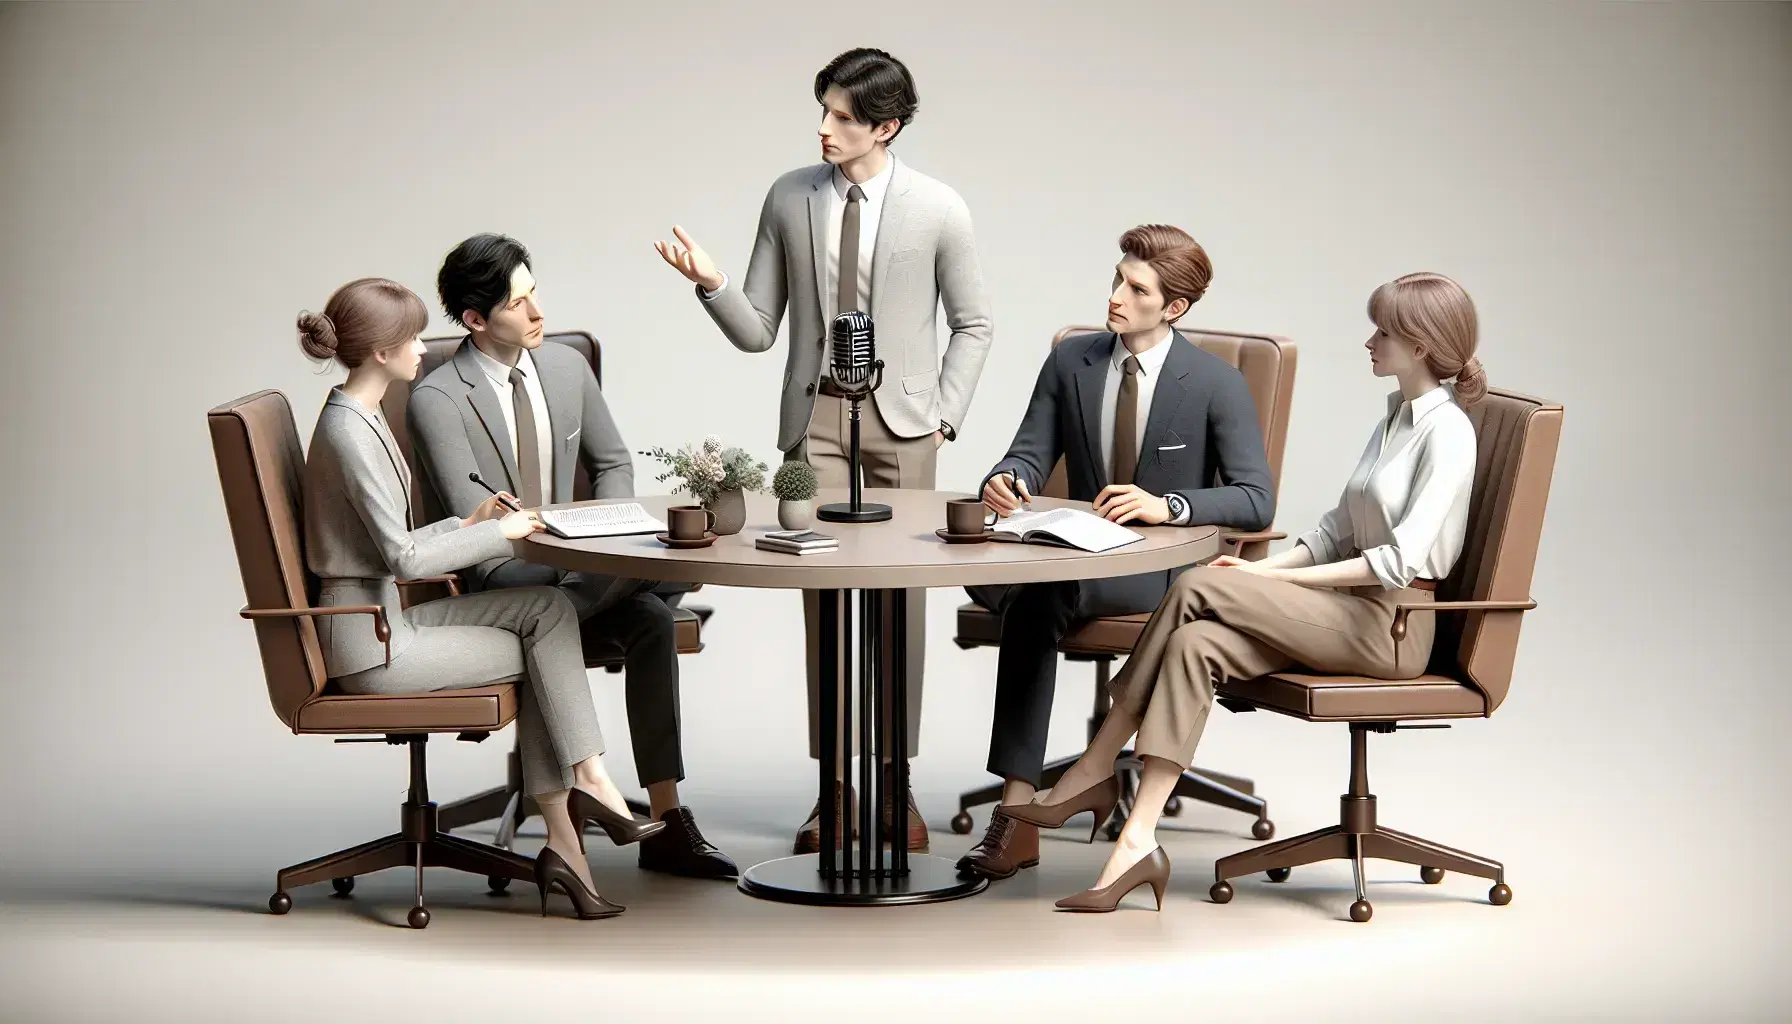 Cuatro profesionales en reunión, uno de pie gestualizando y tres sentados atentos, alrededor de una mesa con micrófono y tazas de café.